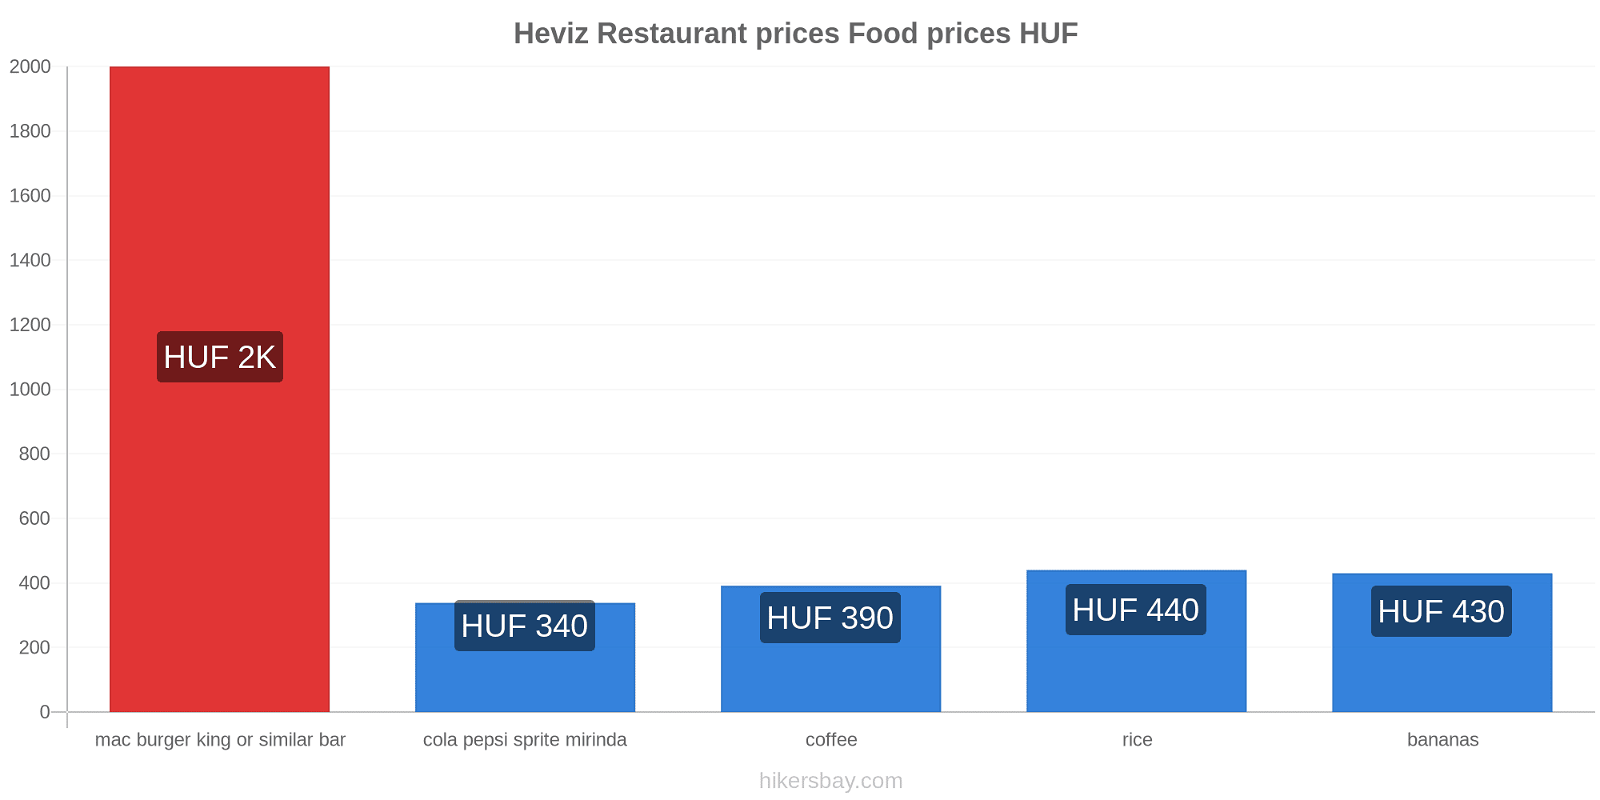 Heviz price changes hikersbay.com